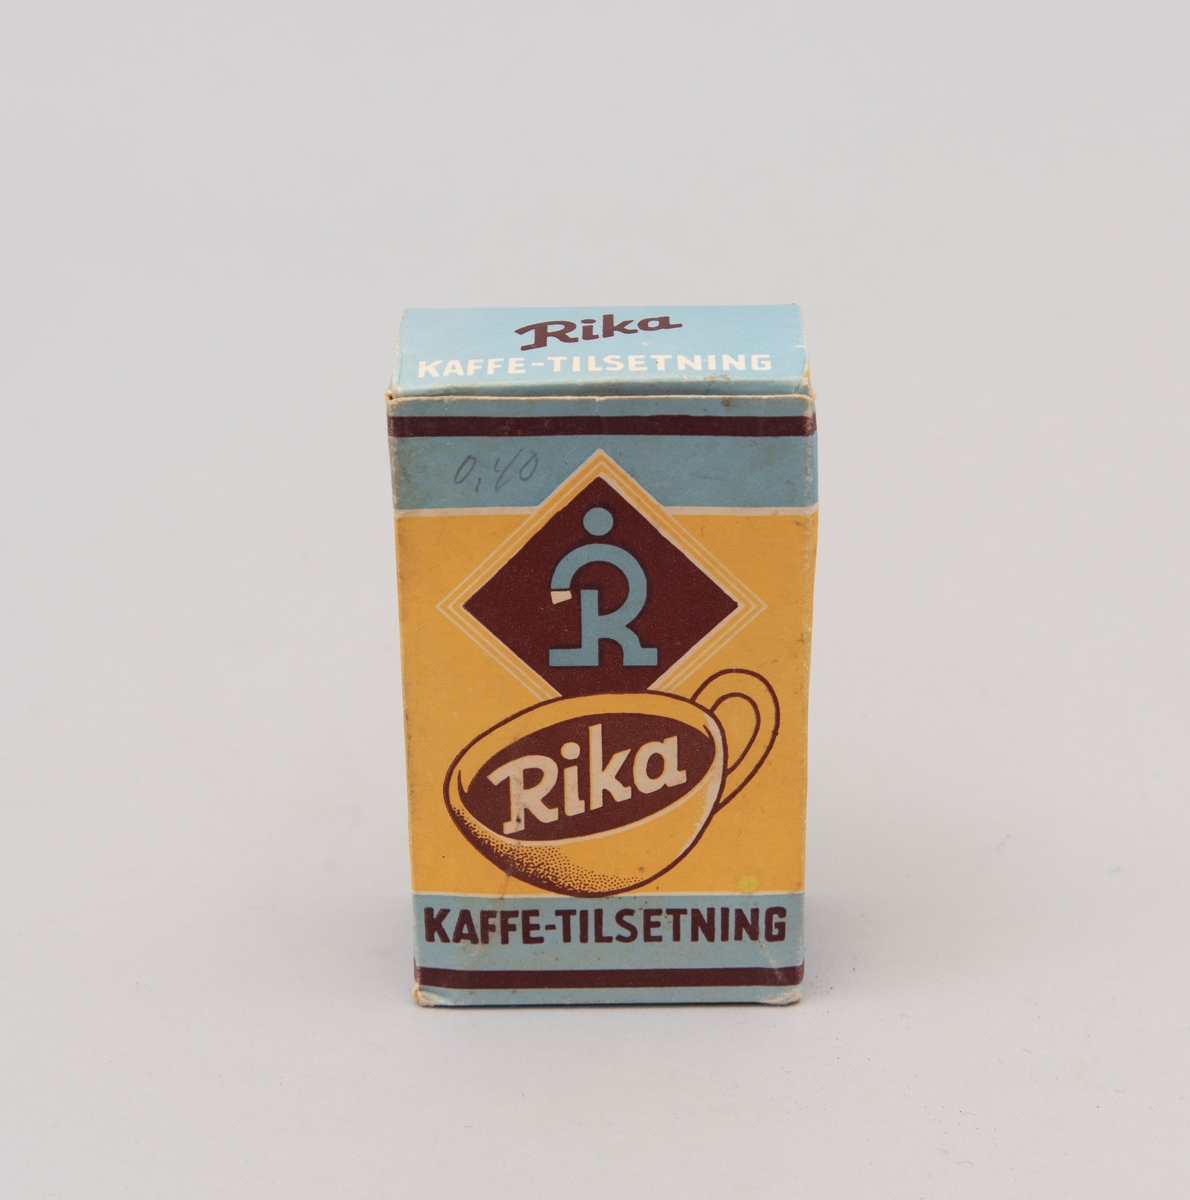 "Rika. Kaffe-tilsetning". Pappeske med innhold i matpapir. Påskrevet."0,40" (pris) med gråblyant. Produsert av A/S P.G. Rieber & Søn, Bergen. (motiv i gult, blått og brunt)